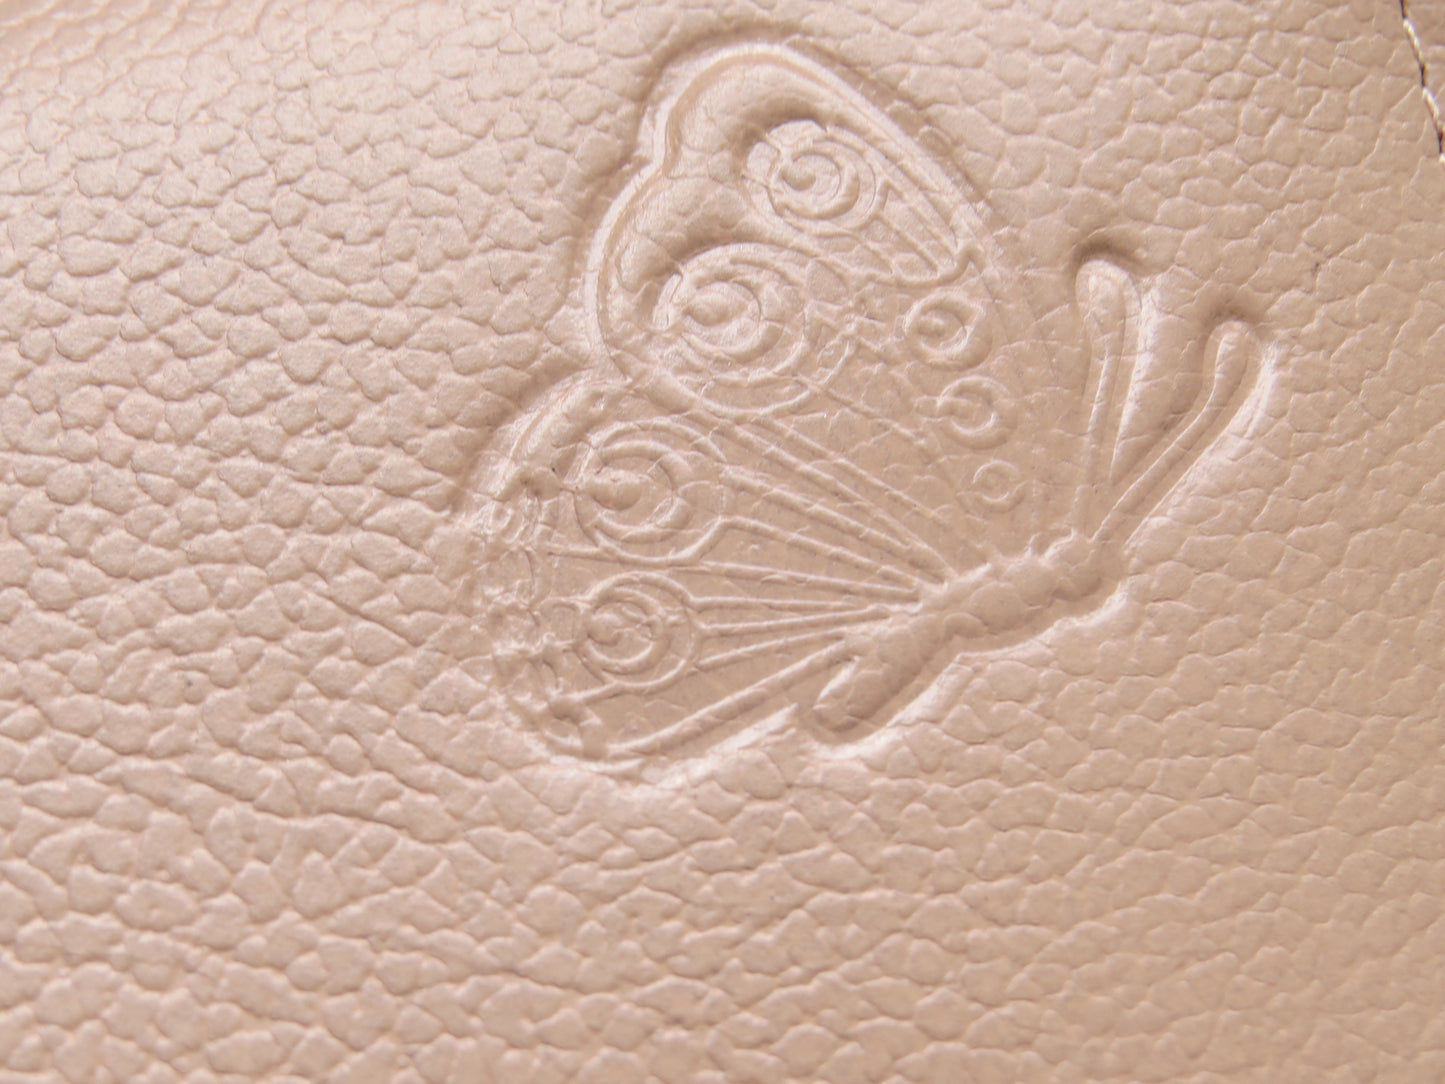 The Butterfly Beauty- Women's Leather Wallet